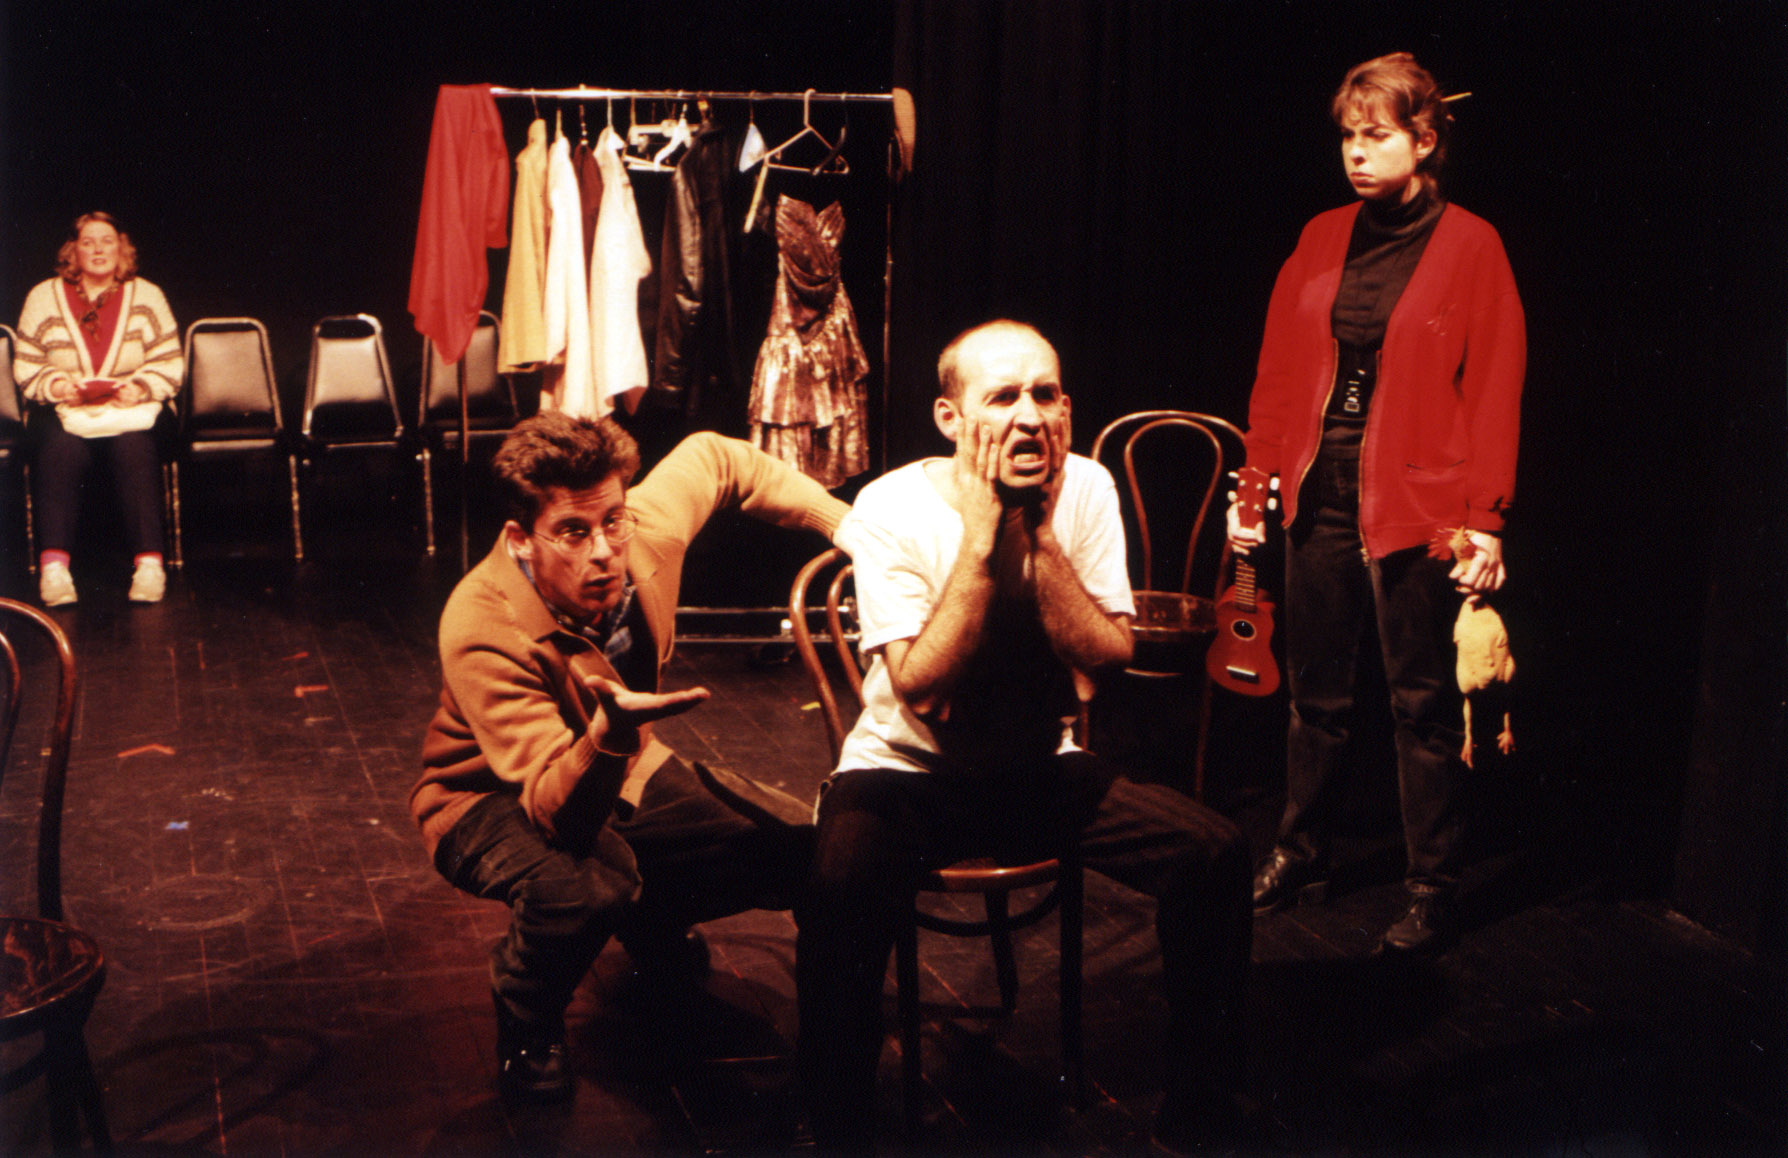    Bang!&nbsp; Art Street Theatre 1999  